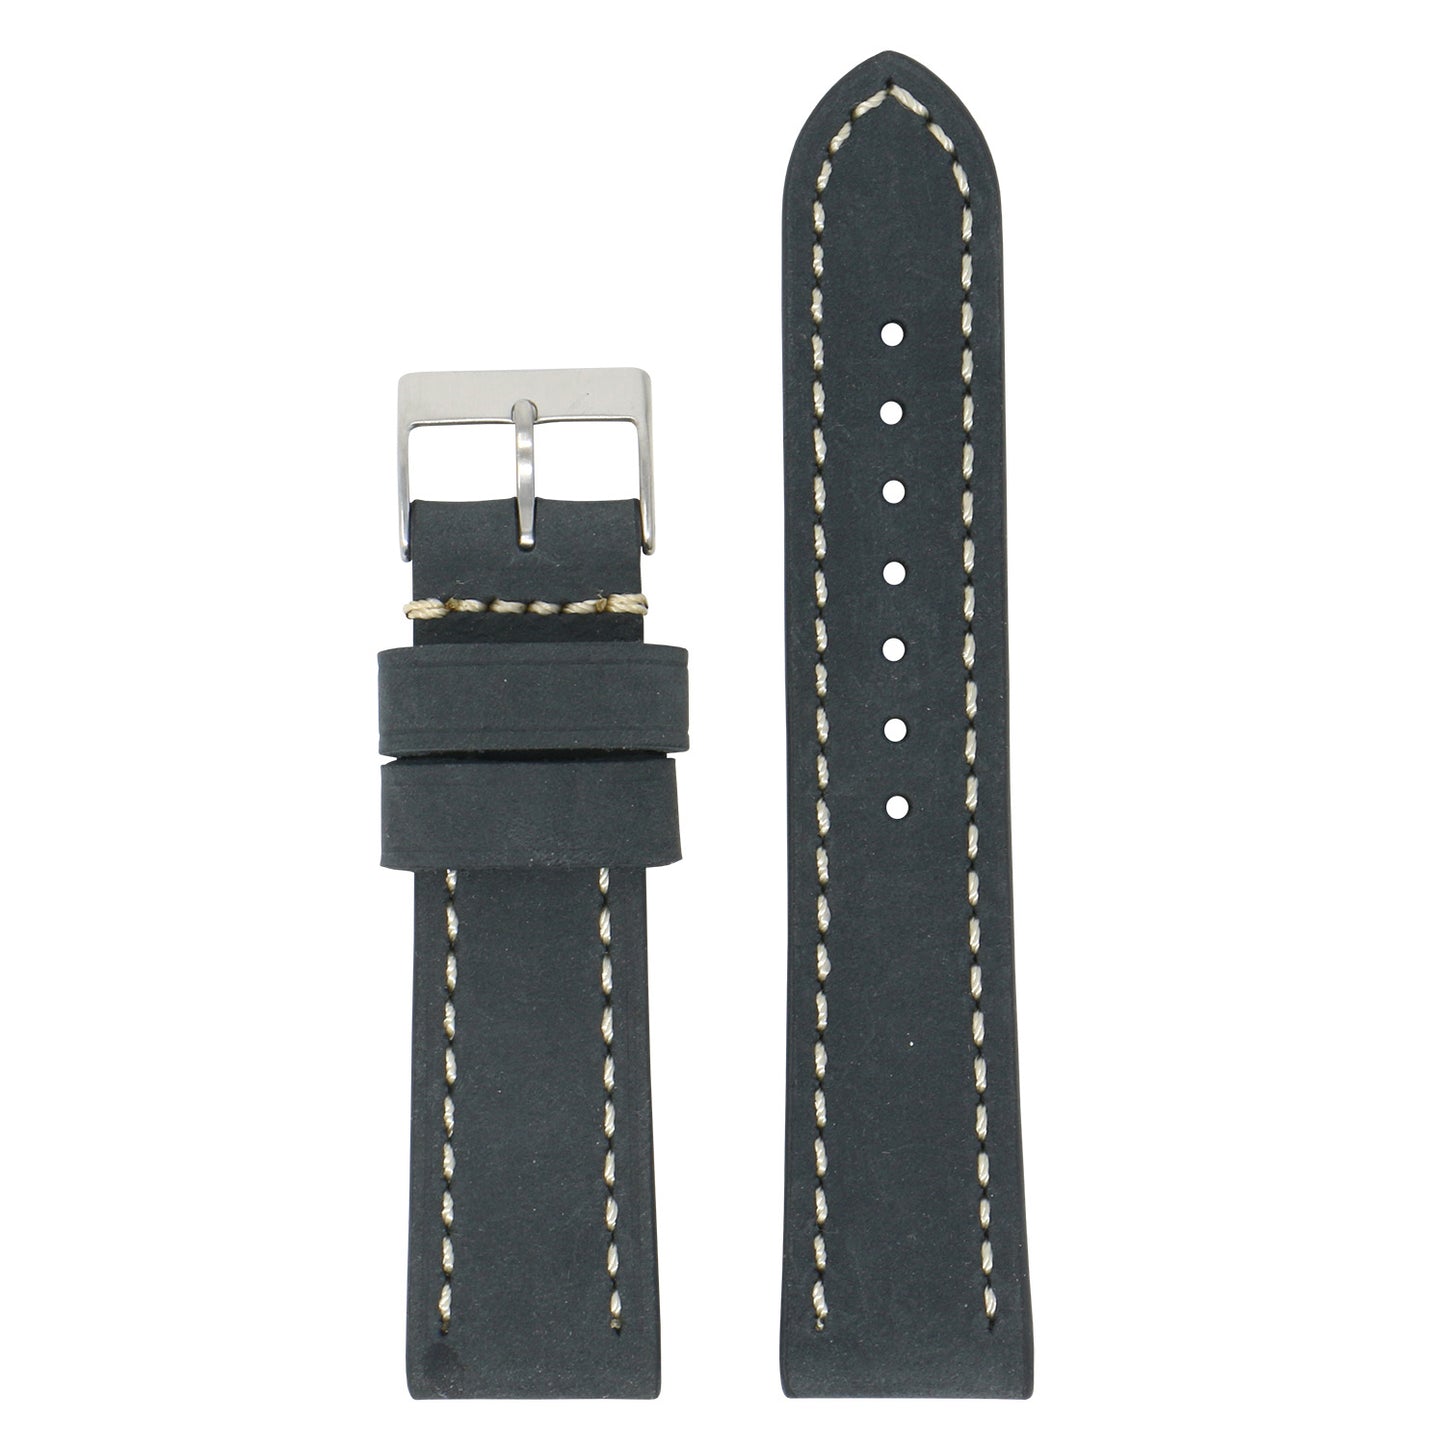 Vintage Leather Strap (Short, Standard, Extra Long) for Garmin Forerunner 745